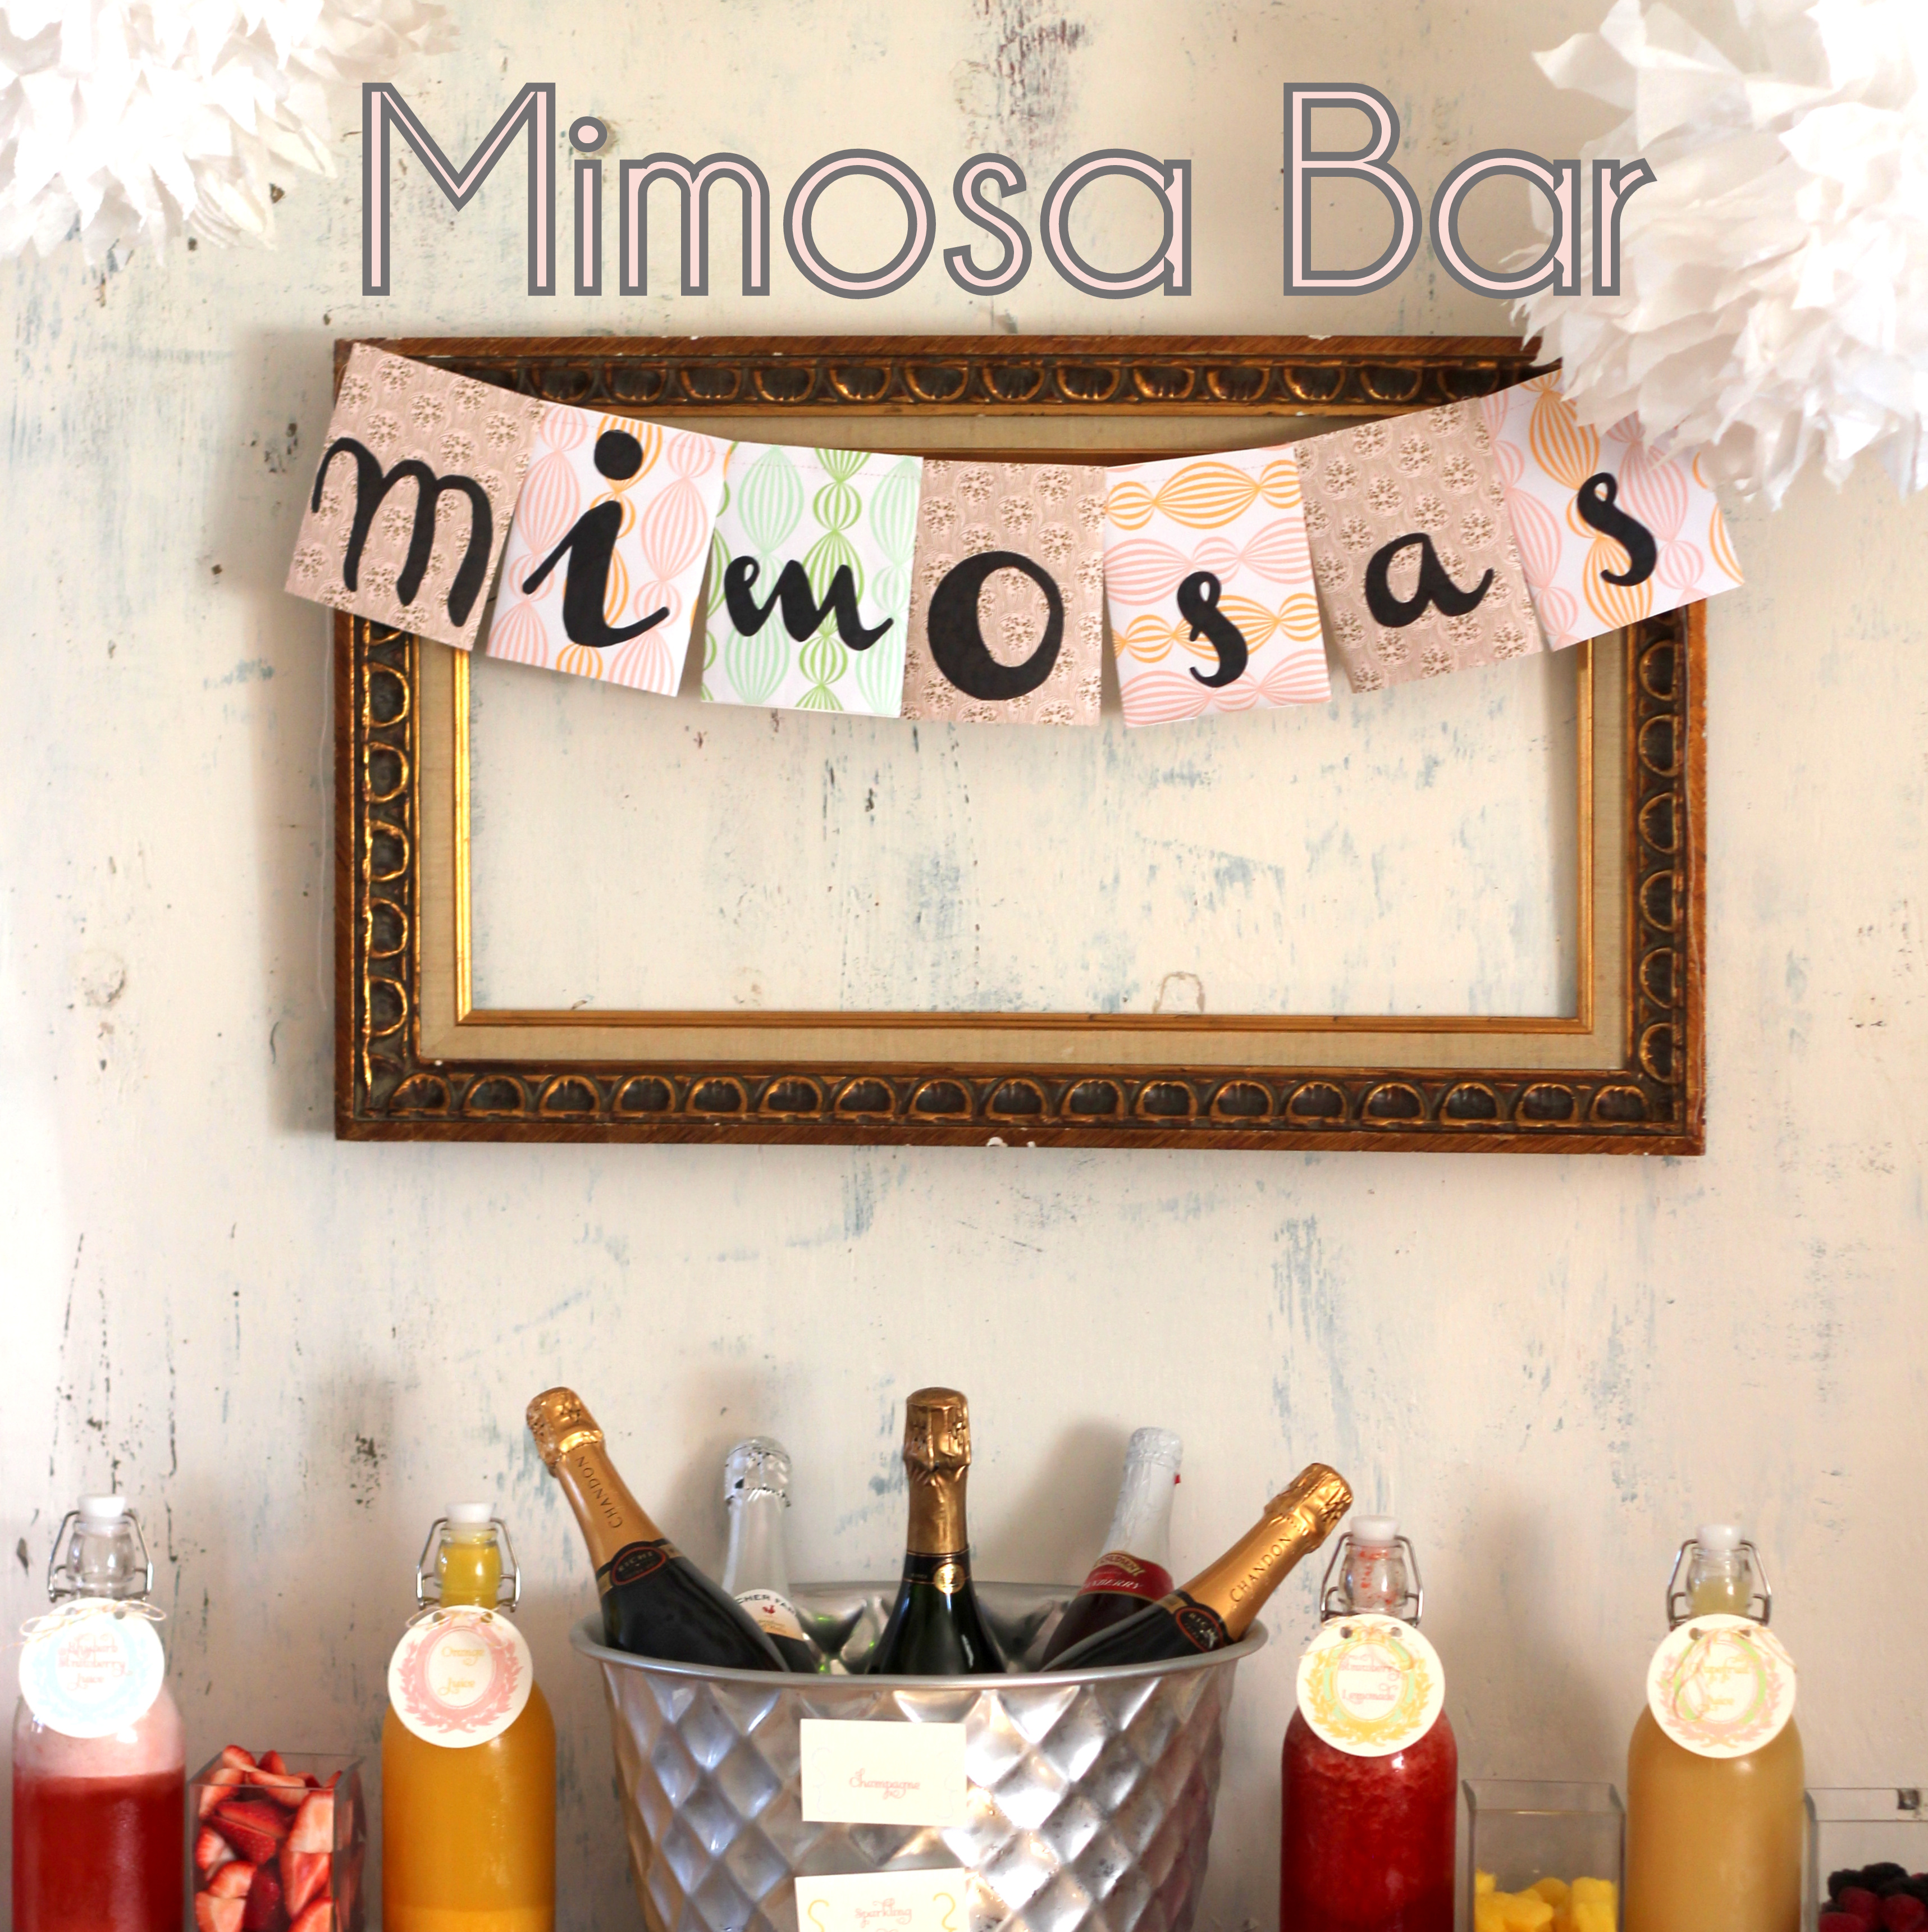 Mimosa Bar